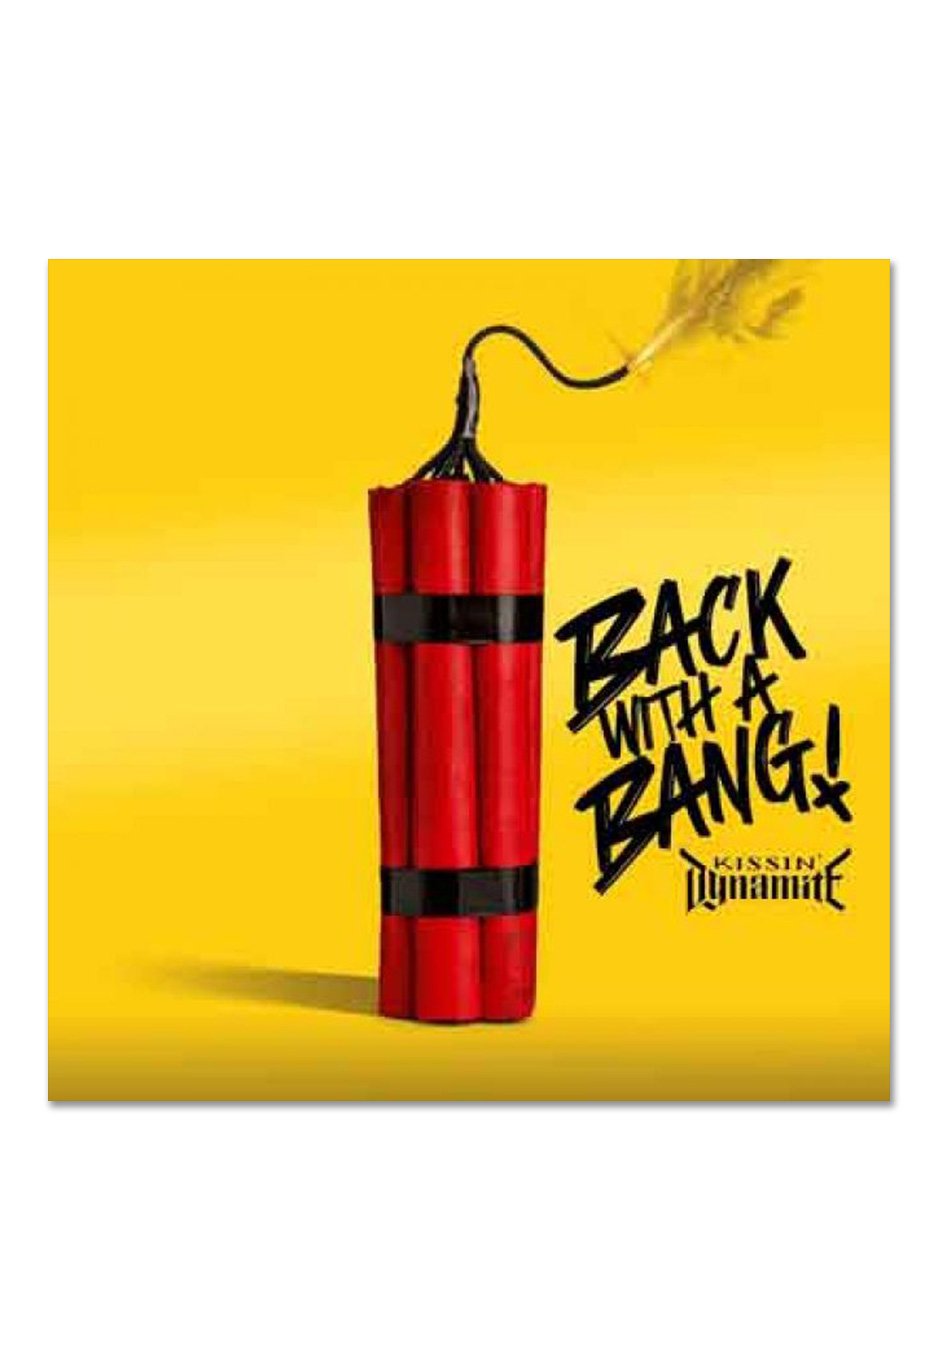 Kissin' Dynamite - Back With A Bang - Digipak CD